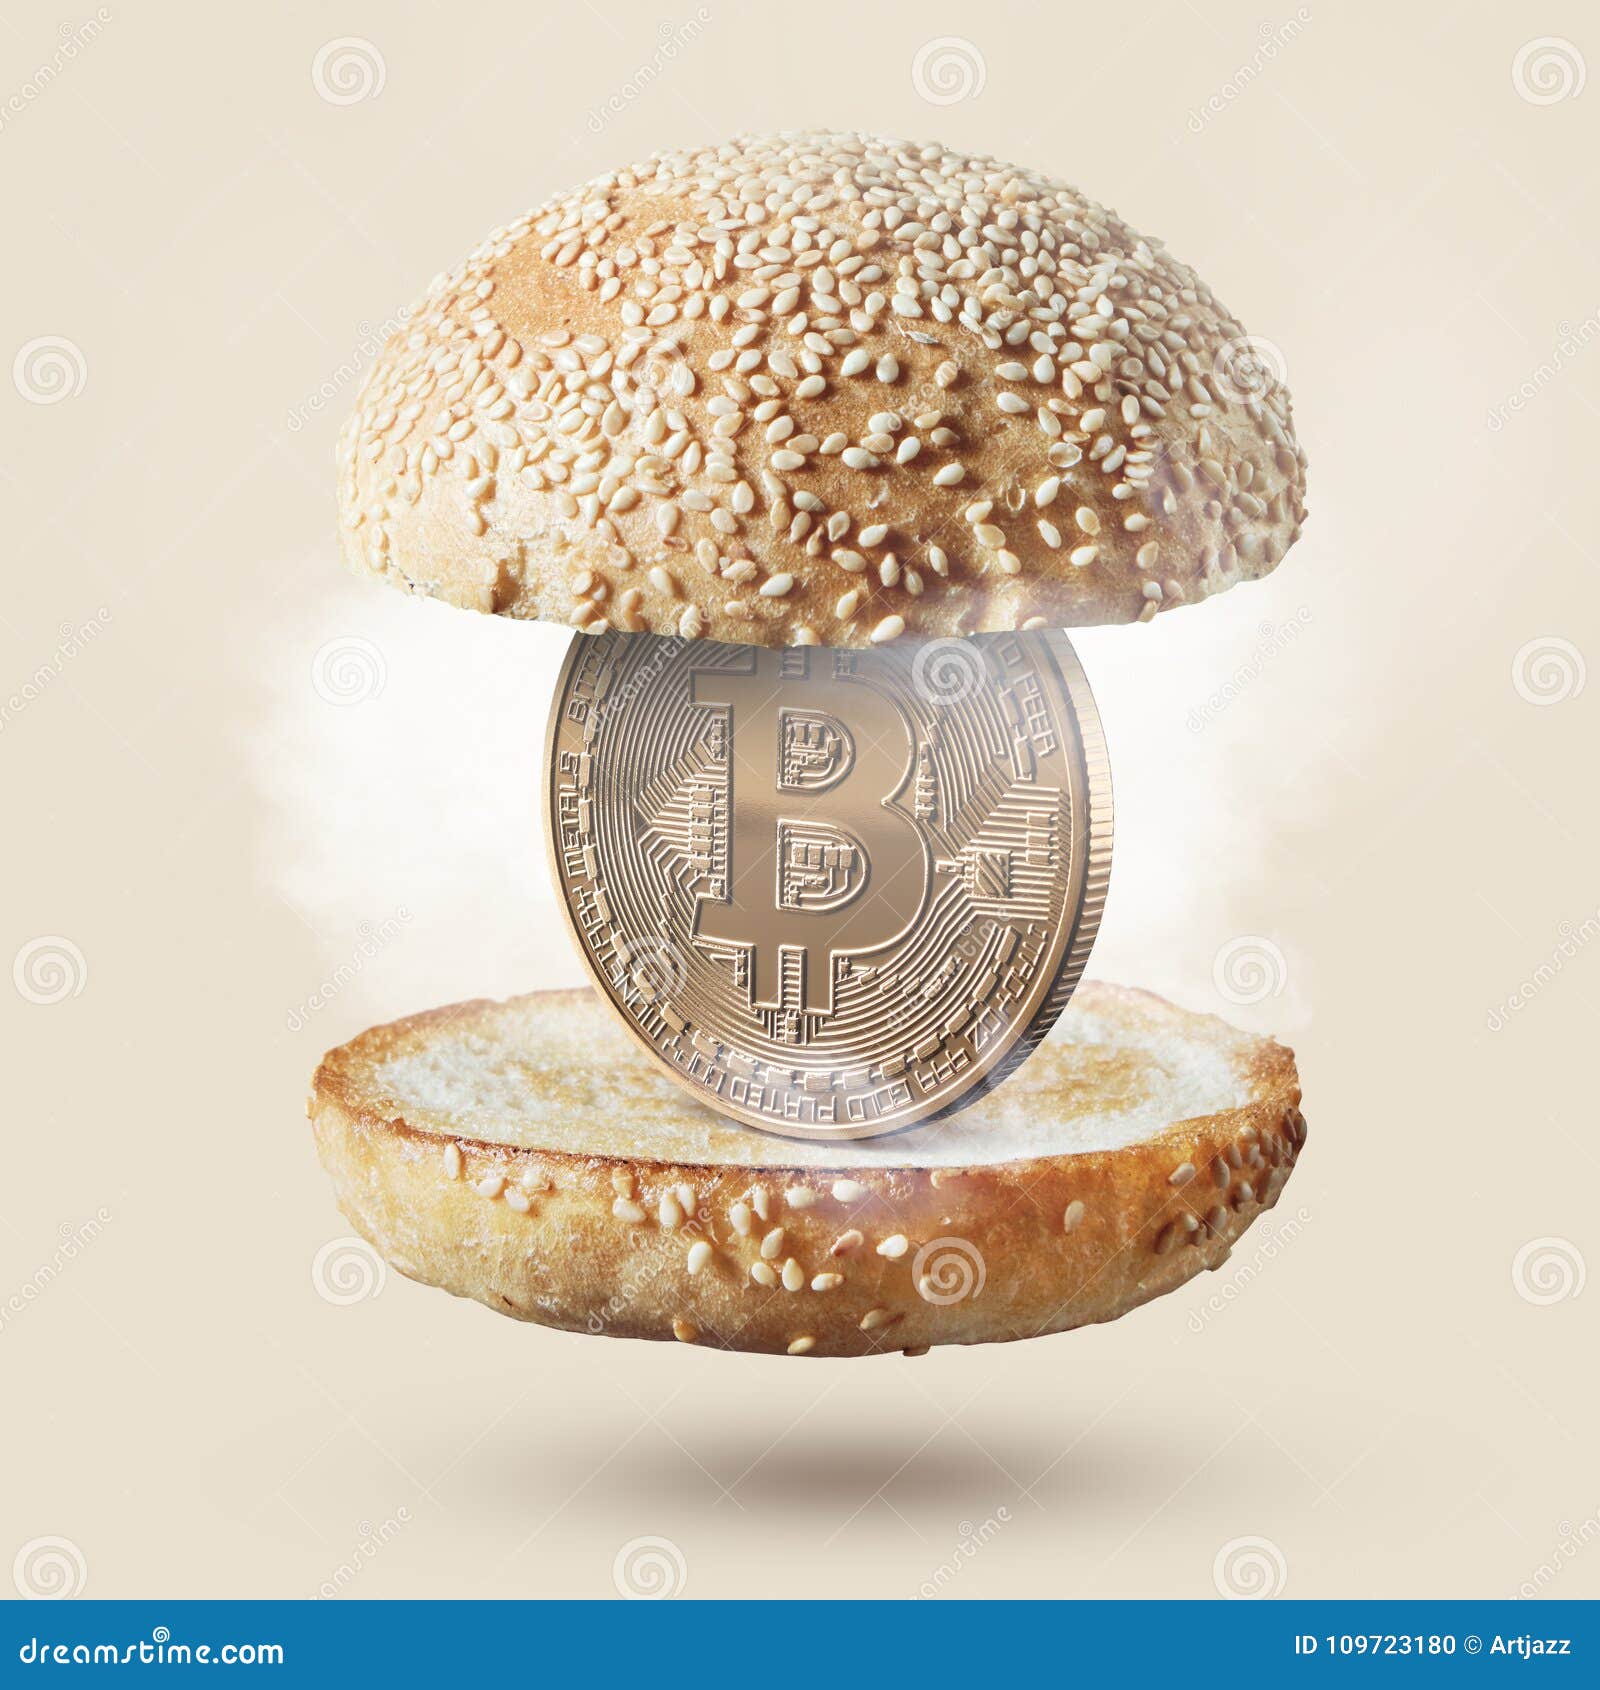 Buy food bitcoin курс биткоина на период